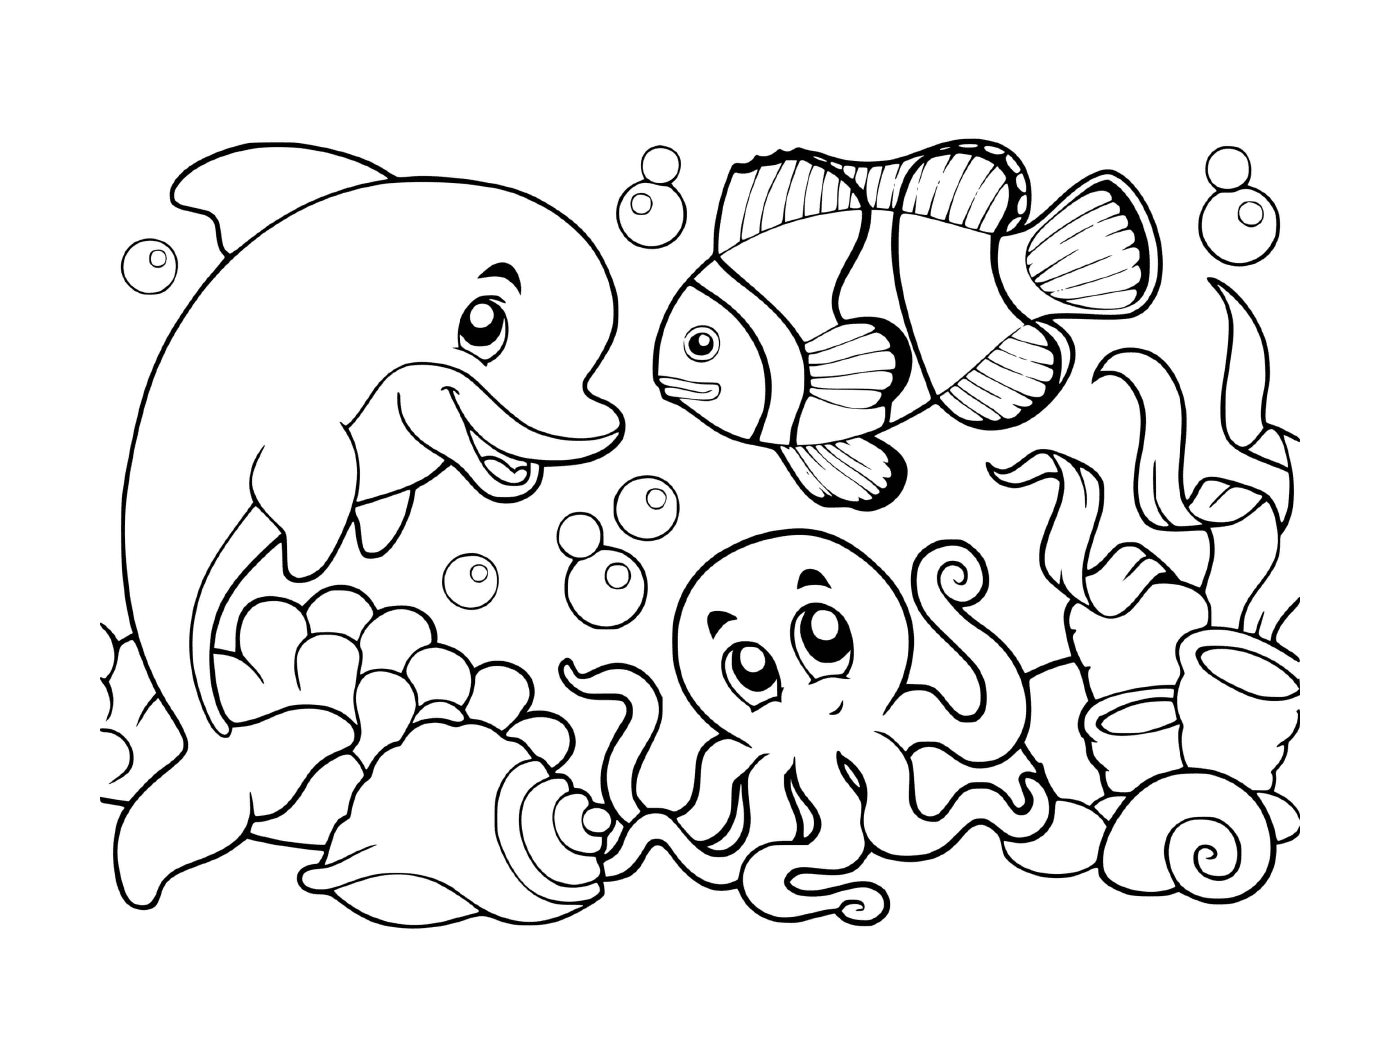  eine Unterwasserszene mit Fischen, Schalentieren und Kraken 